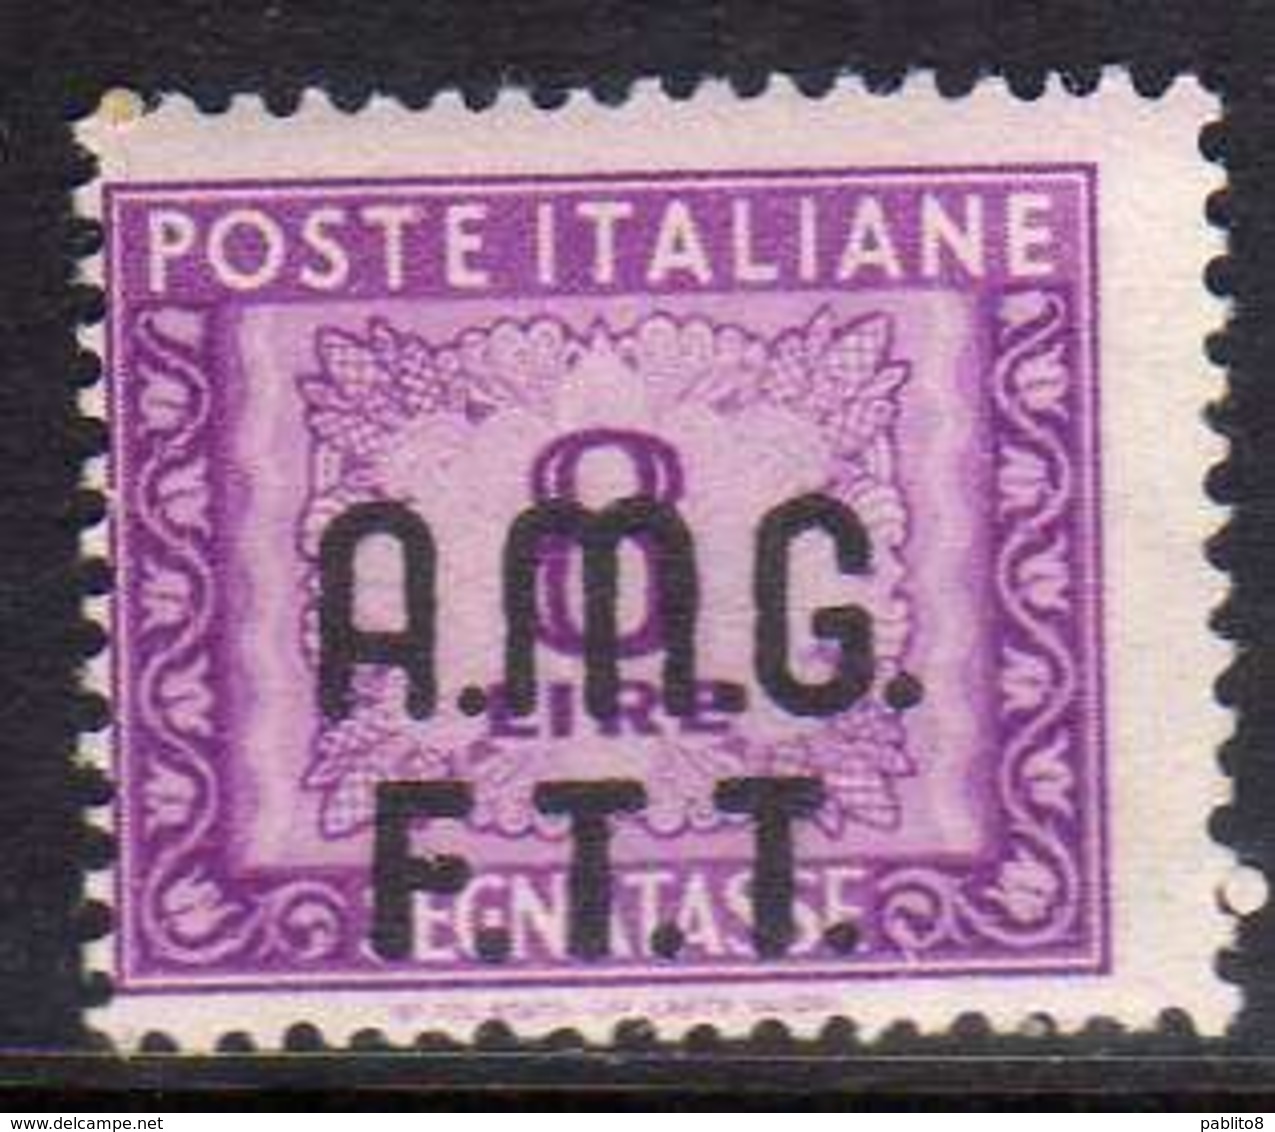 TRIESTE A 1947 1949 AMG - FTT ITALIA ITALY OVERPRINTED SEGNATASSE TAXES TASSE LIRE 8 MNH - Postage Due